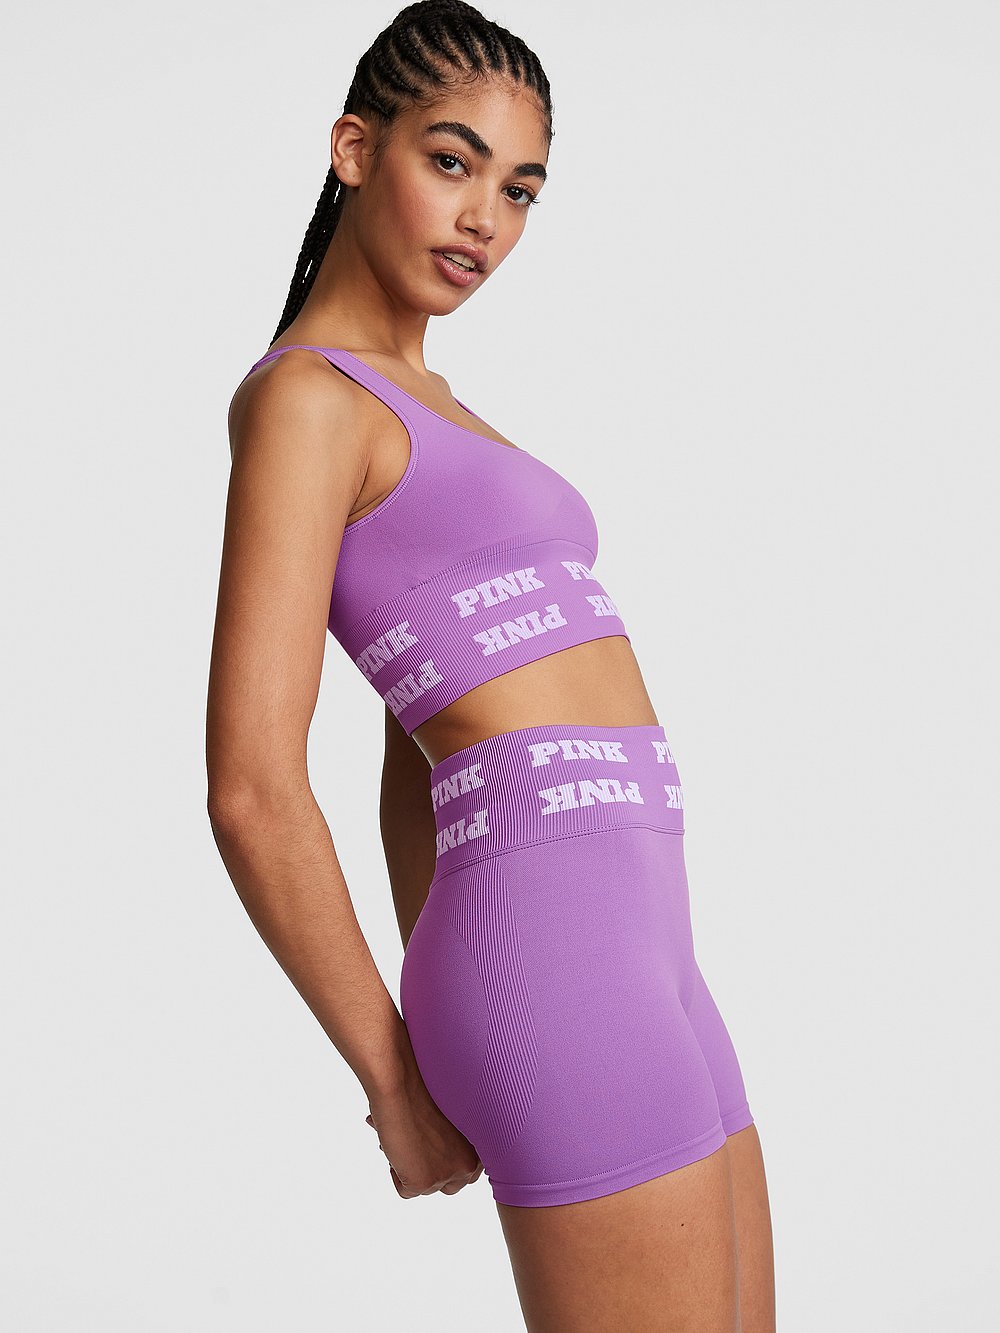 Victoria Secret - Pink – Buy 1, Get 1 Free Sweats